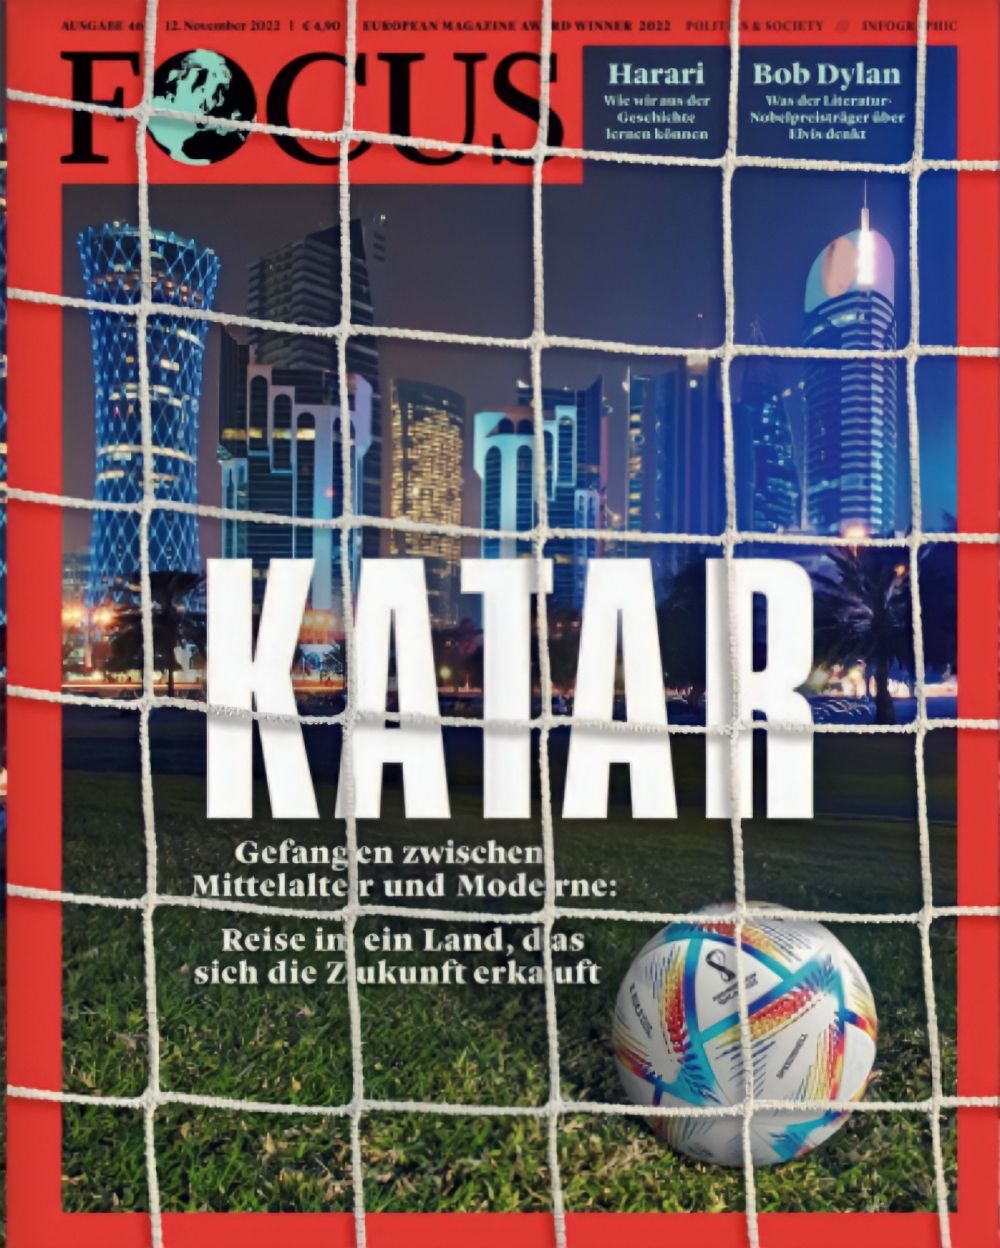 Немецкий журнал Focus пишет о чемпионате мира по футболу в Катаре, который стал самым дорогим за всю историю. Редакция заостряет внимание на том, что при строительстве спортивных объектов в Катаре, по ее данным, неоднократно нарушались права строителей-мигрантов.